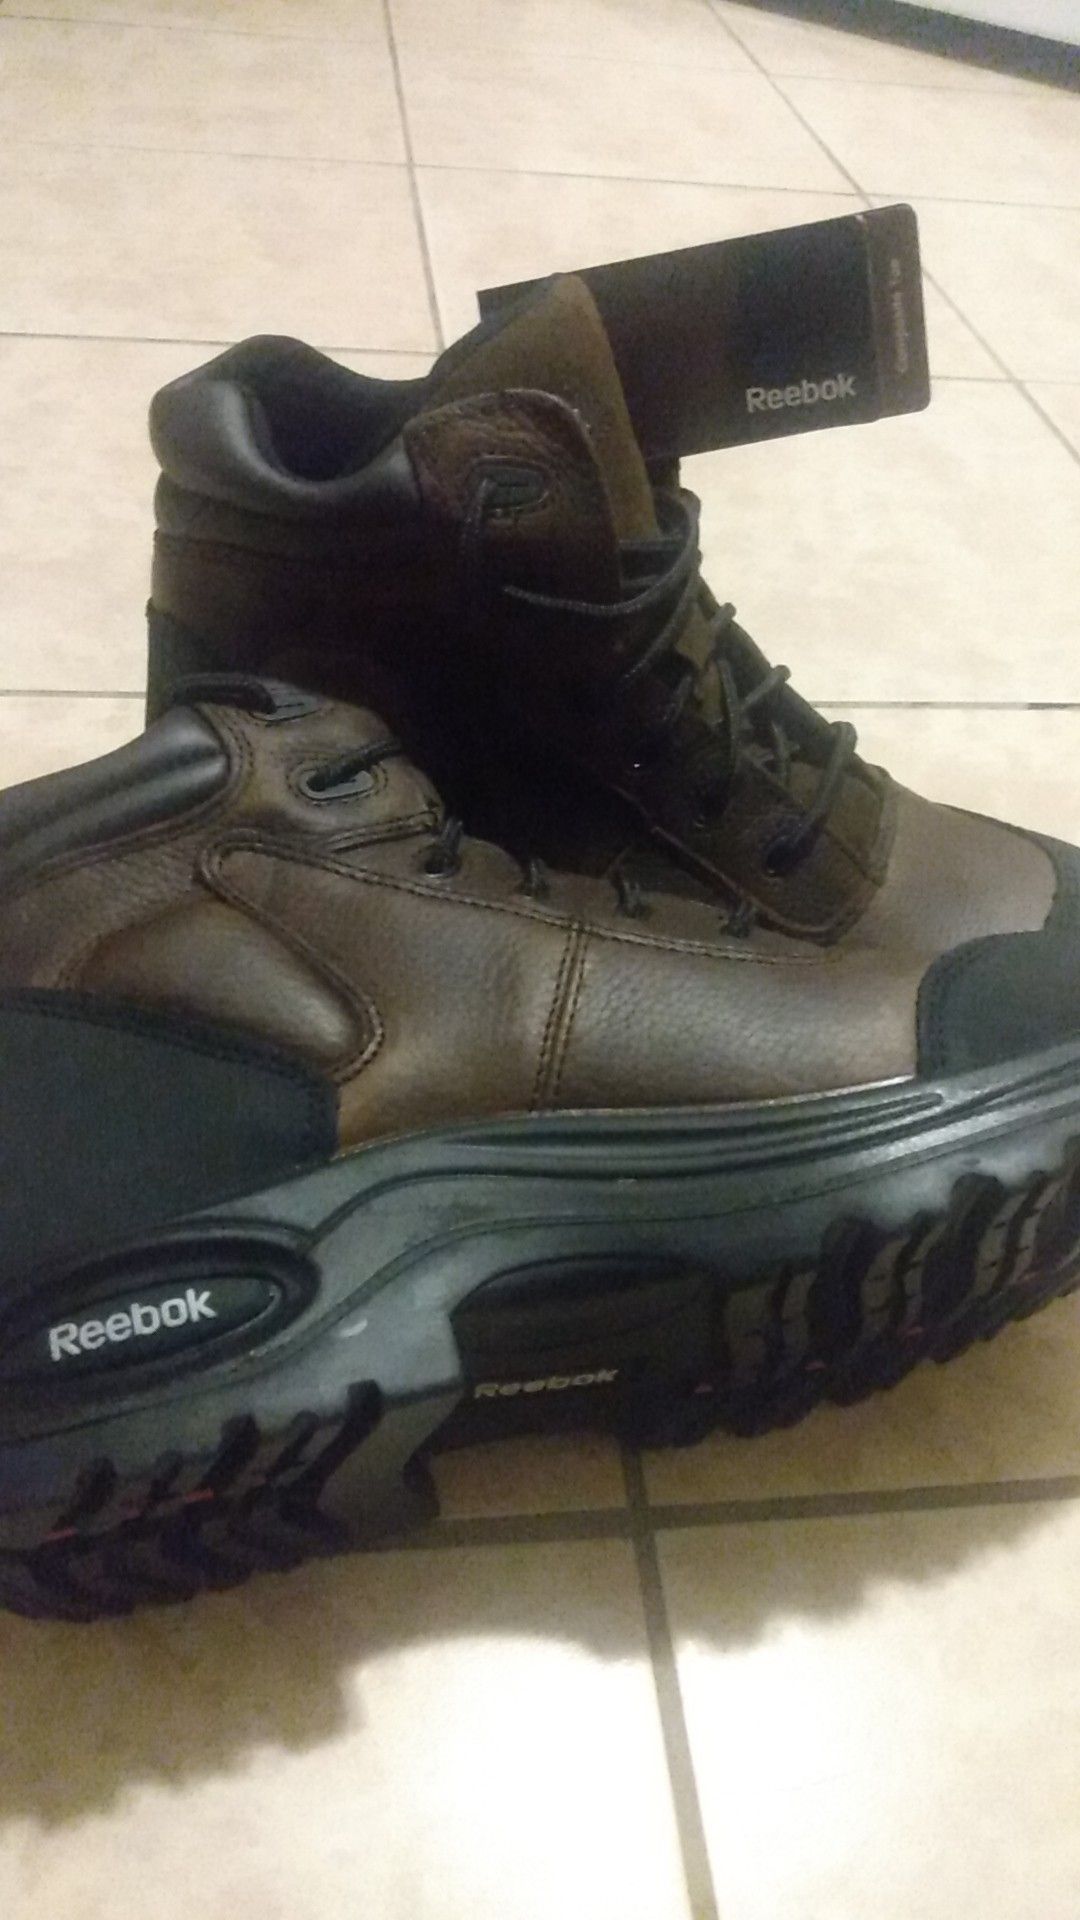 Reebok work standard Boots